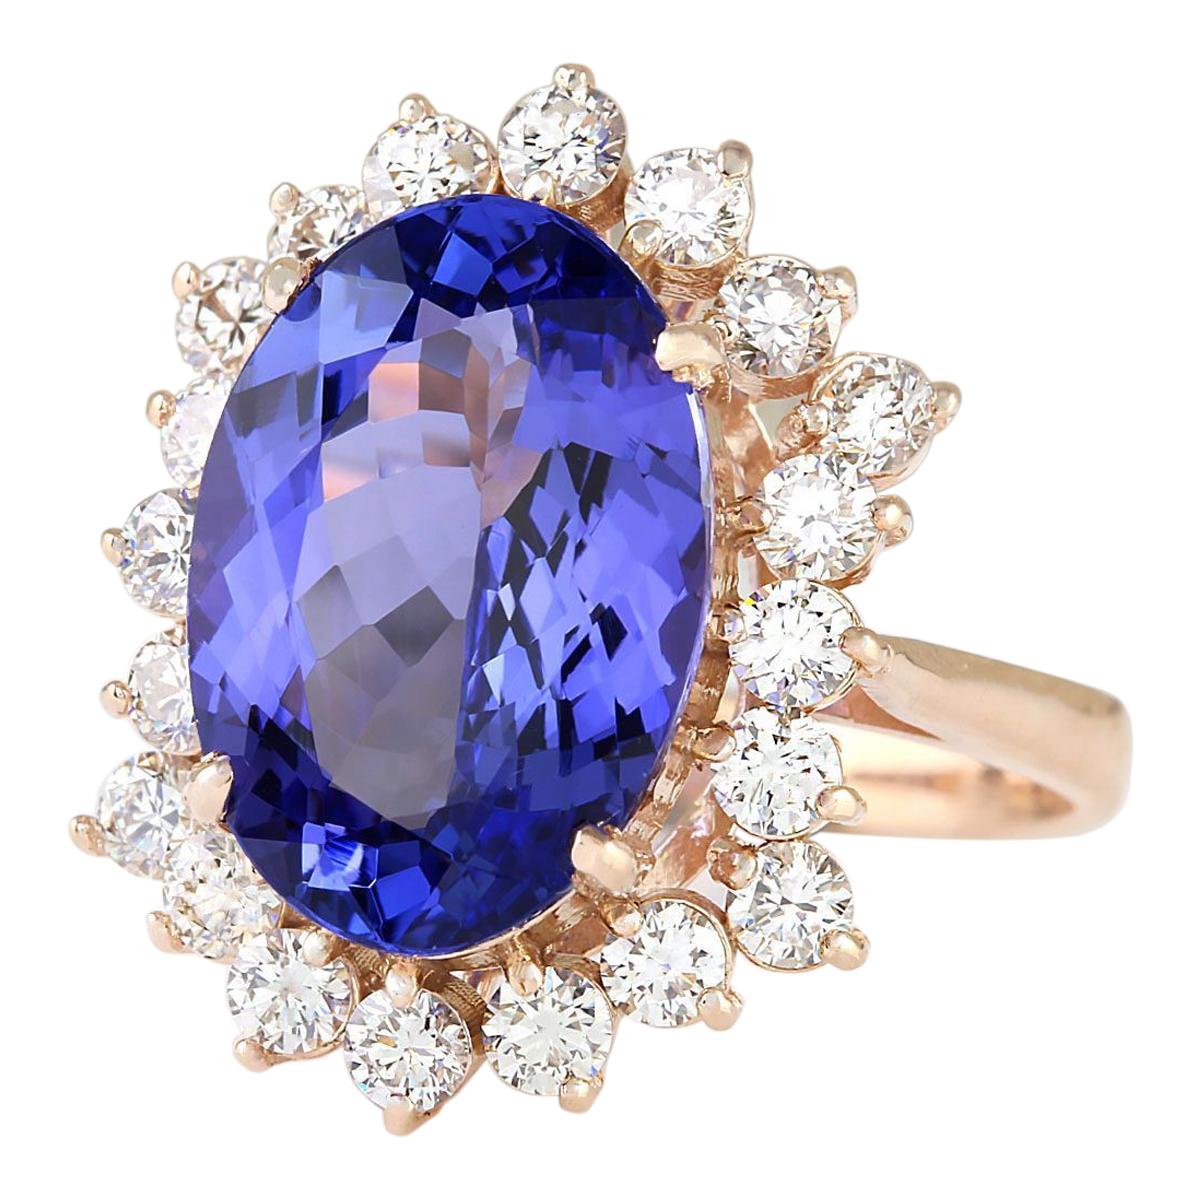 7.50 Carat Tanzanite 14 Karat Rose Gold Diamond Ring
Stamped: 14K Rose Gold
Total Ring Weight: 6.0 Grams
Total  Tanzanite Weight is 6.40 Carat (Measures: 14.00x10.00 mm)
Color: Blue
Total  Diamond Weight is 1.10 Carat
Color: F-G, Clarity: